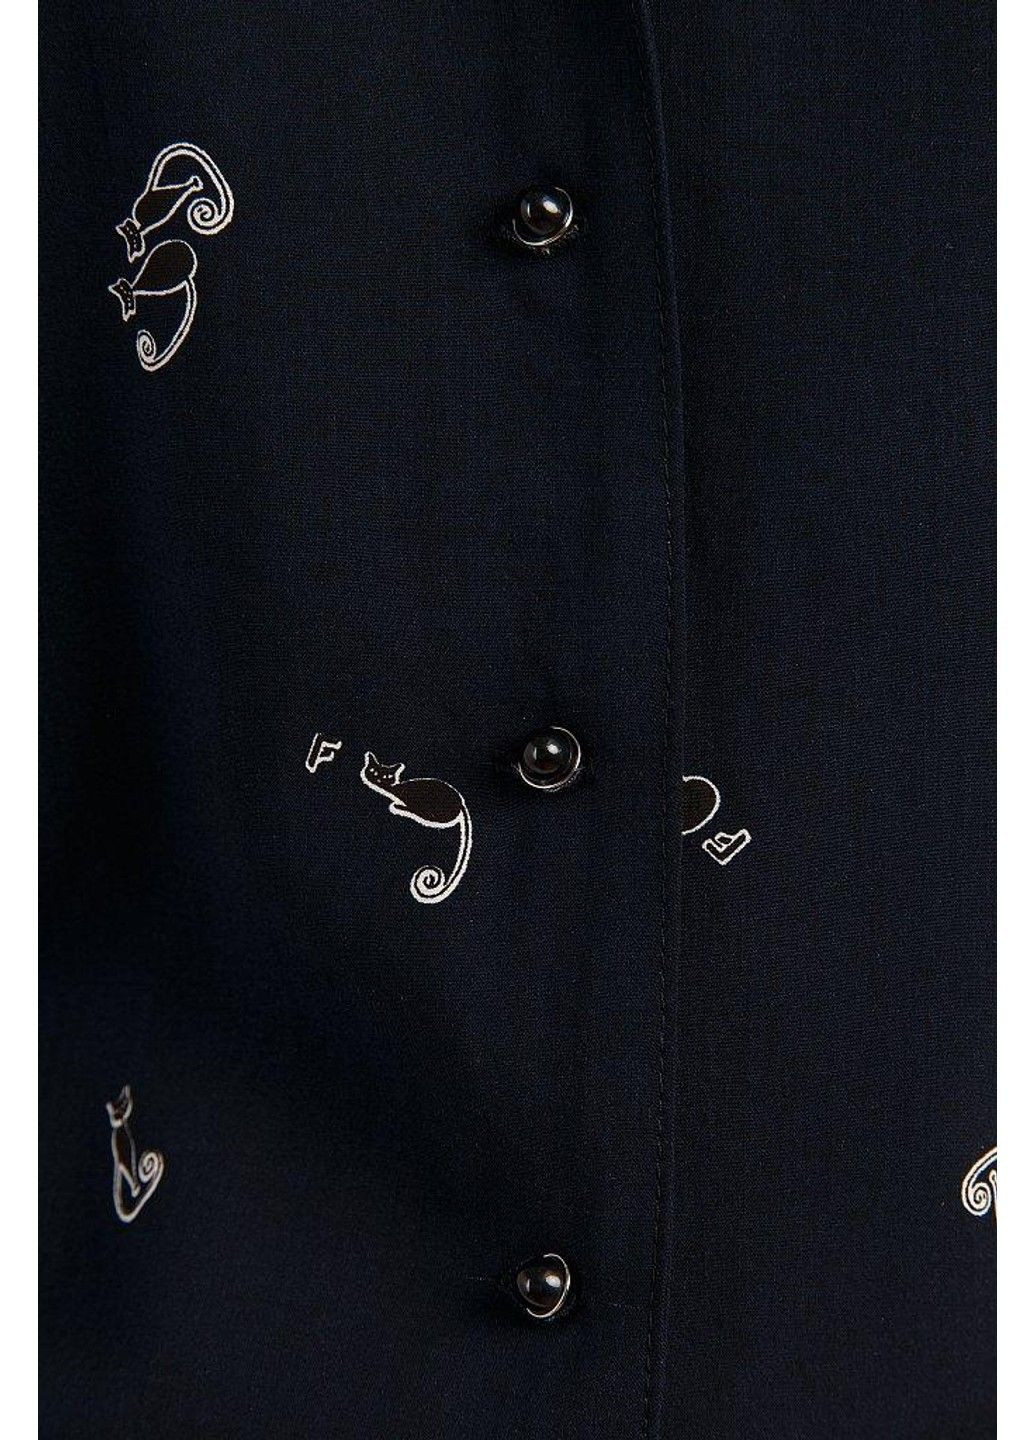 Комбінезон-шорти S19-32092-101 Finn Flare комбінезон-шорти малюнок темно-синій повсякденний